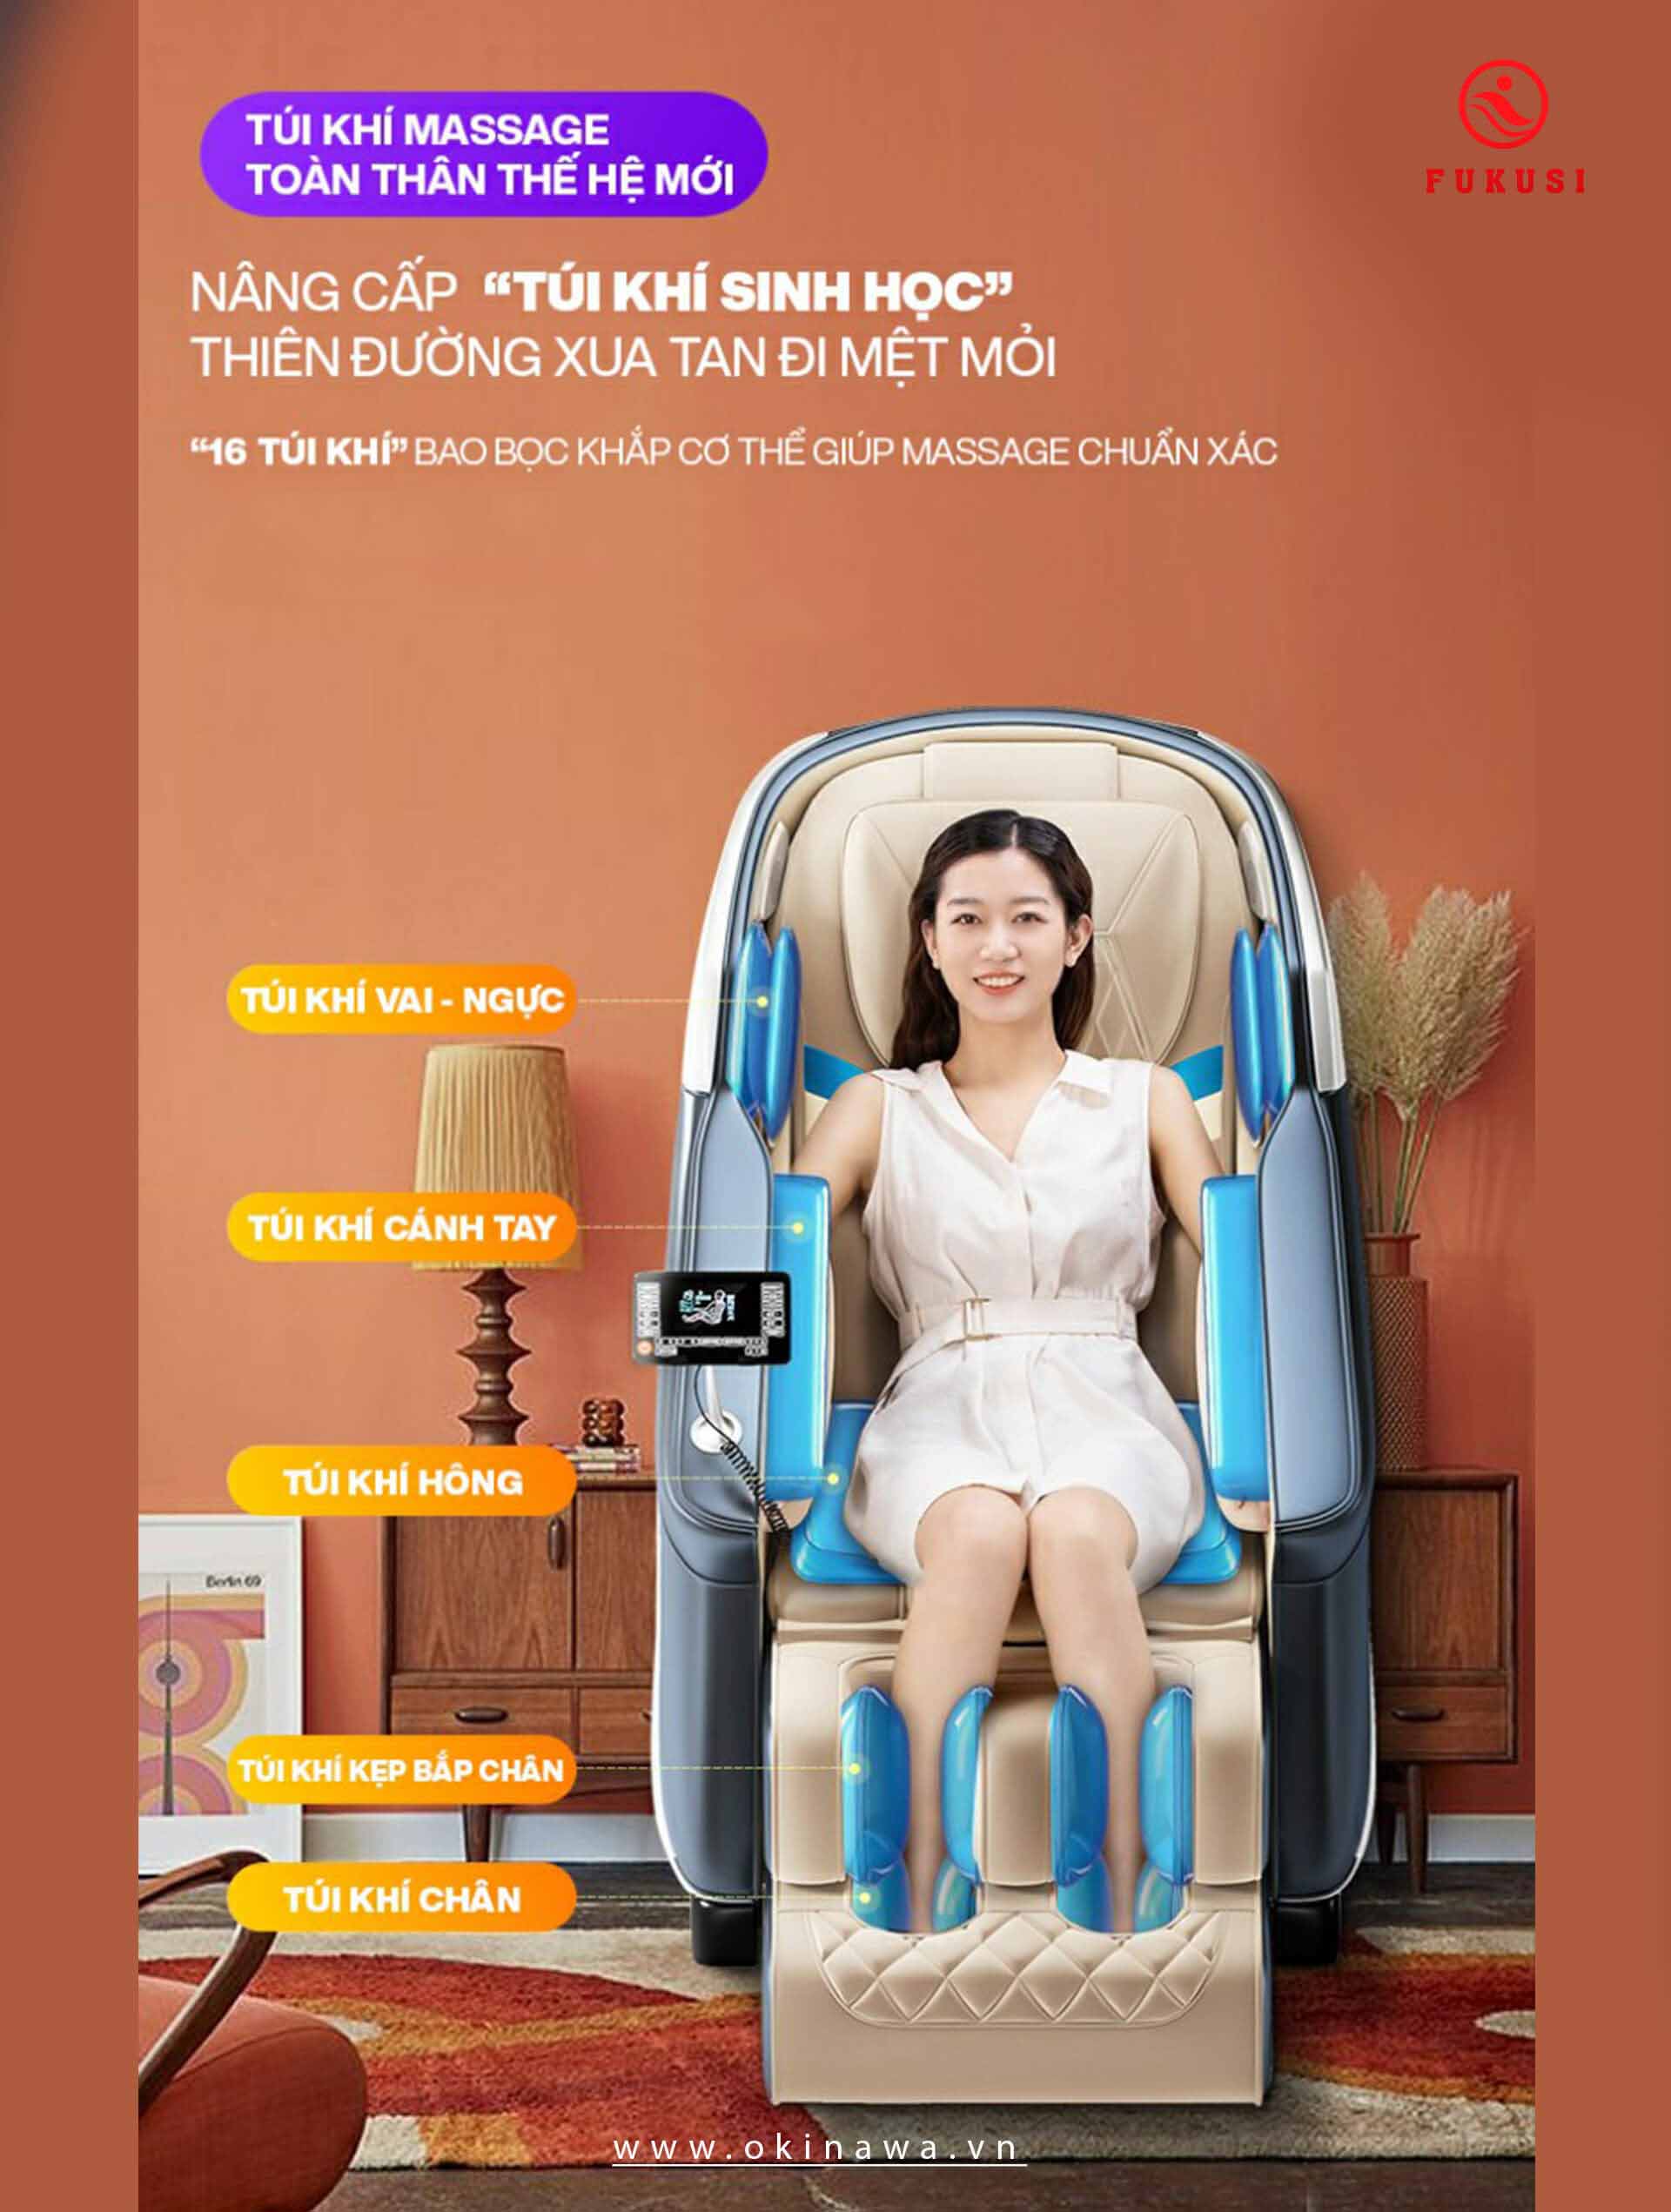 Hệ thống túi klhí ghế massage FUKUSI F - 001